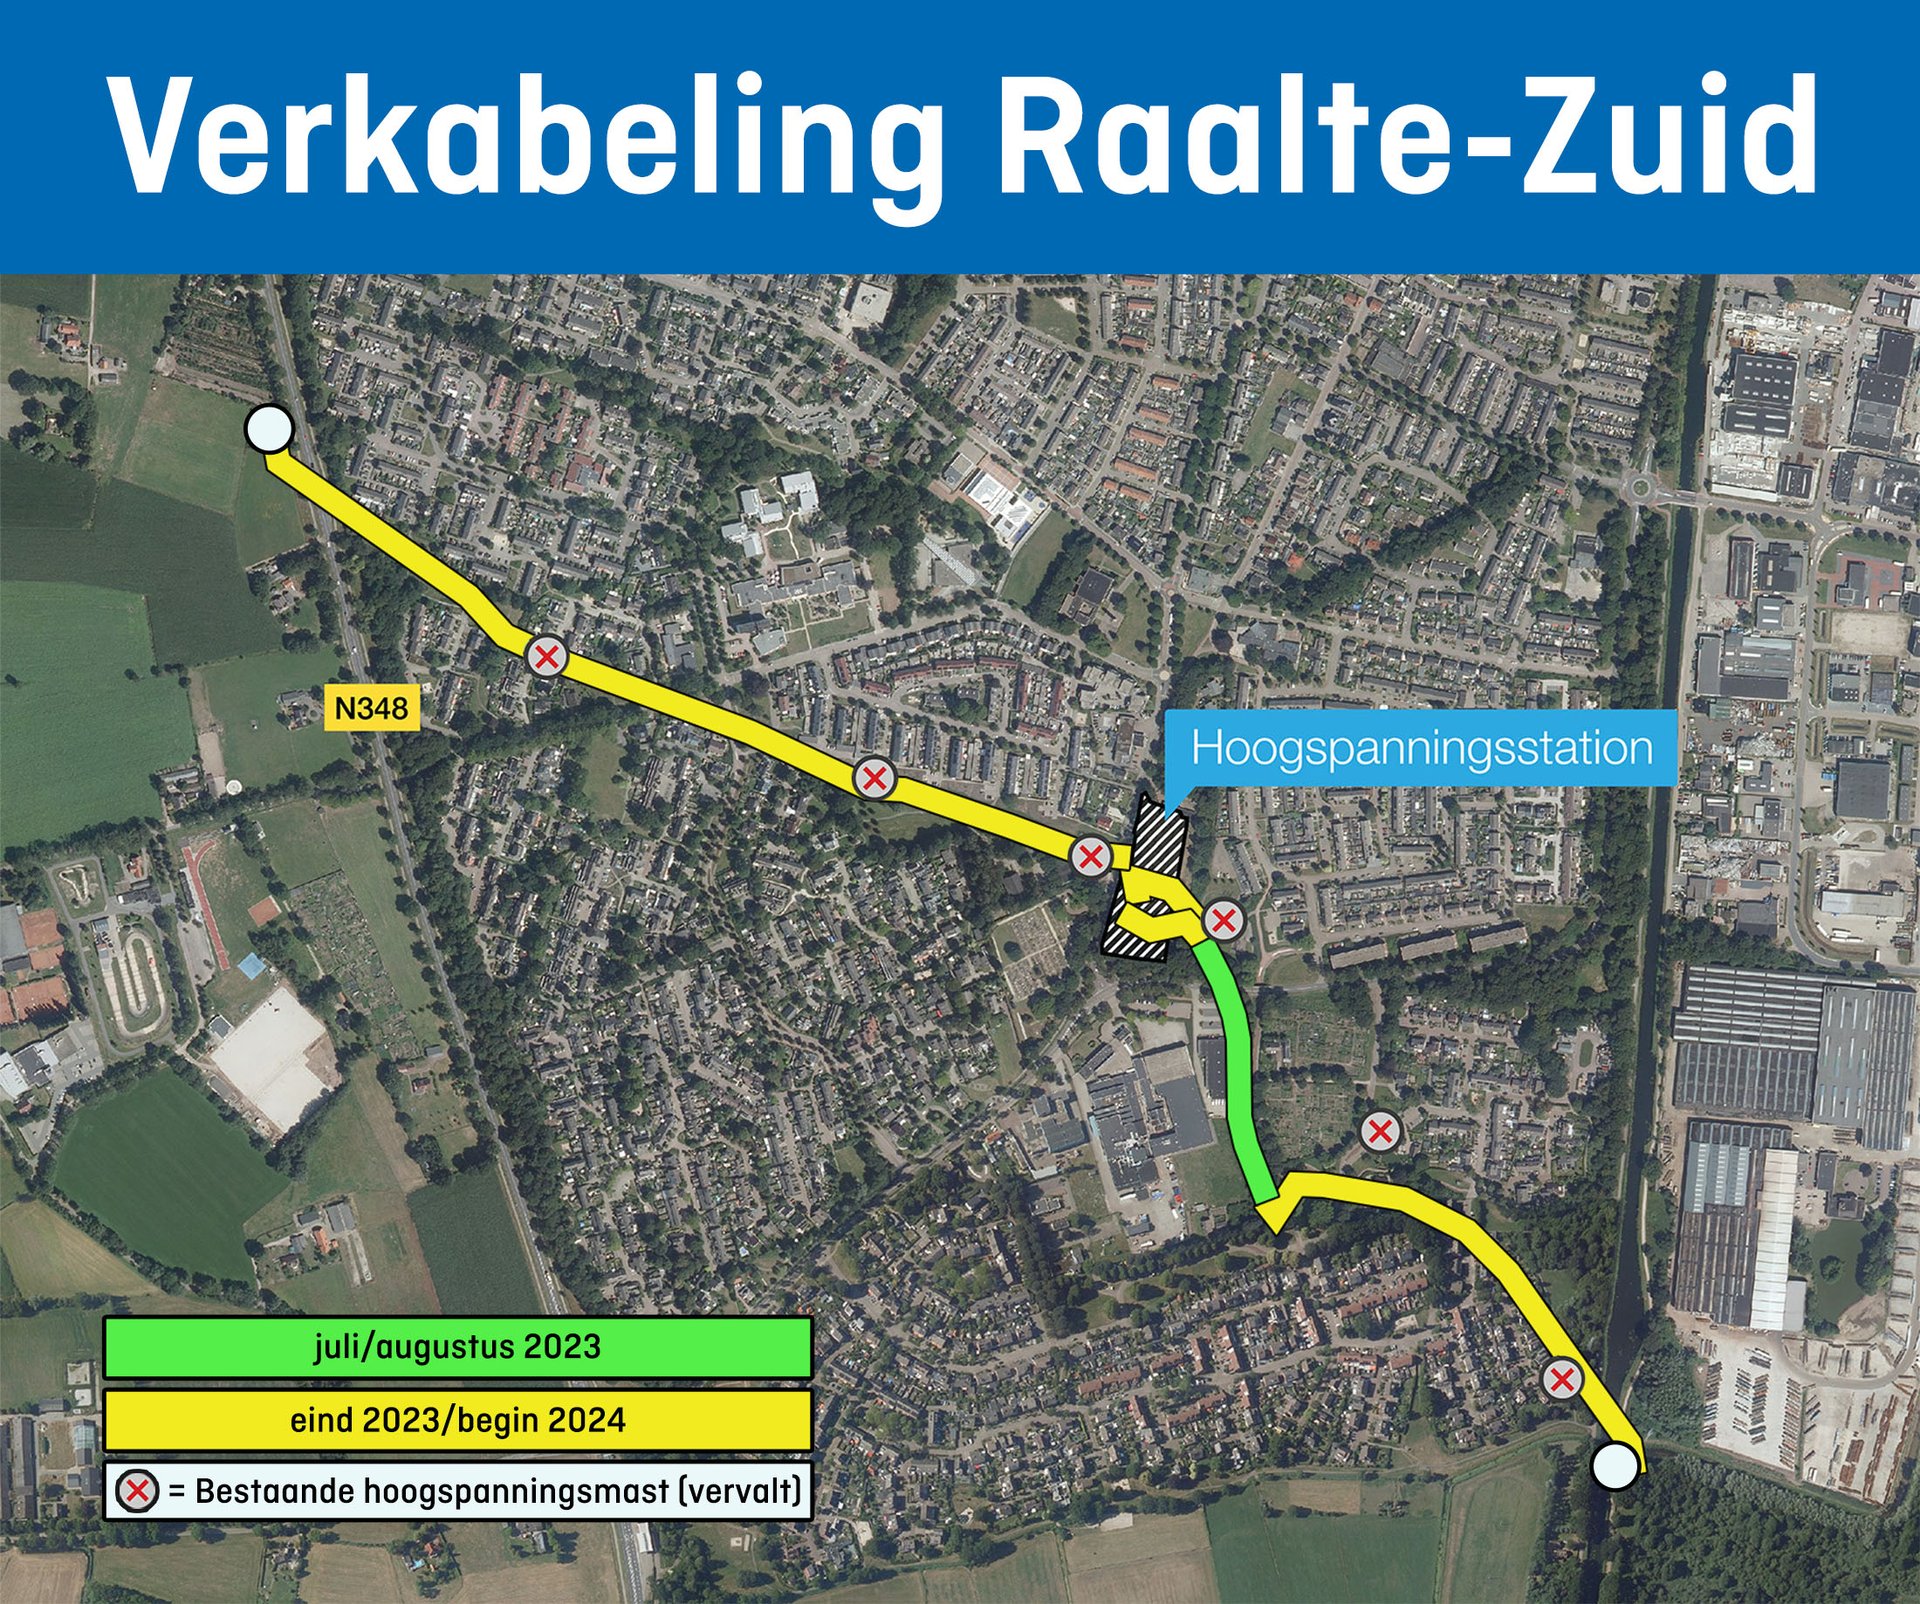 Verkabeling Raalte-Zuid planning